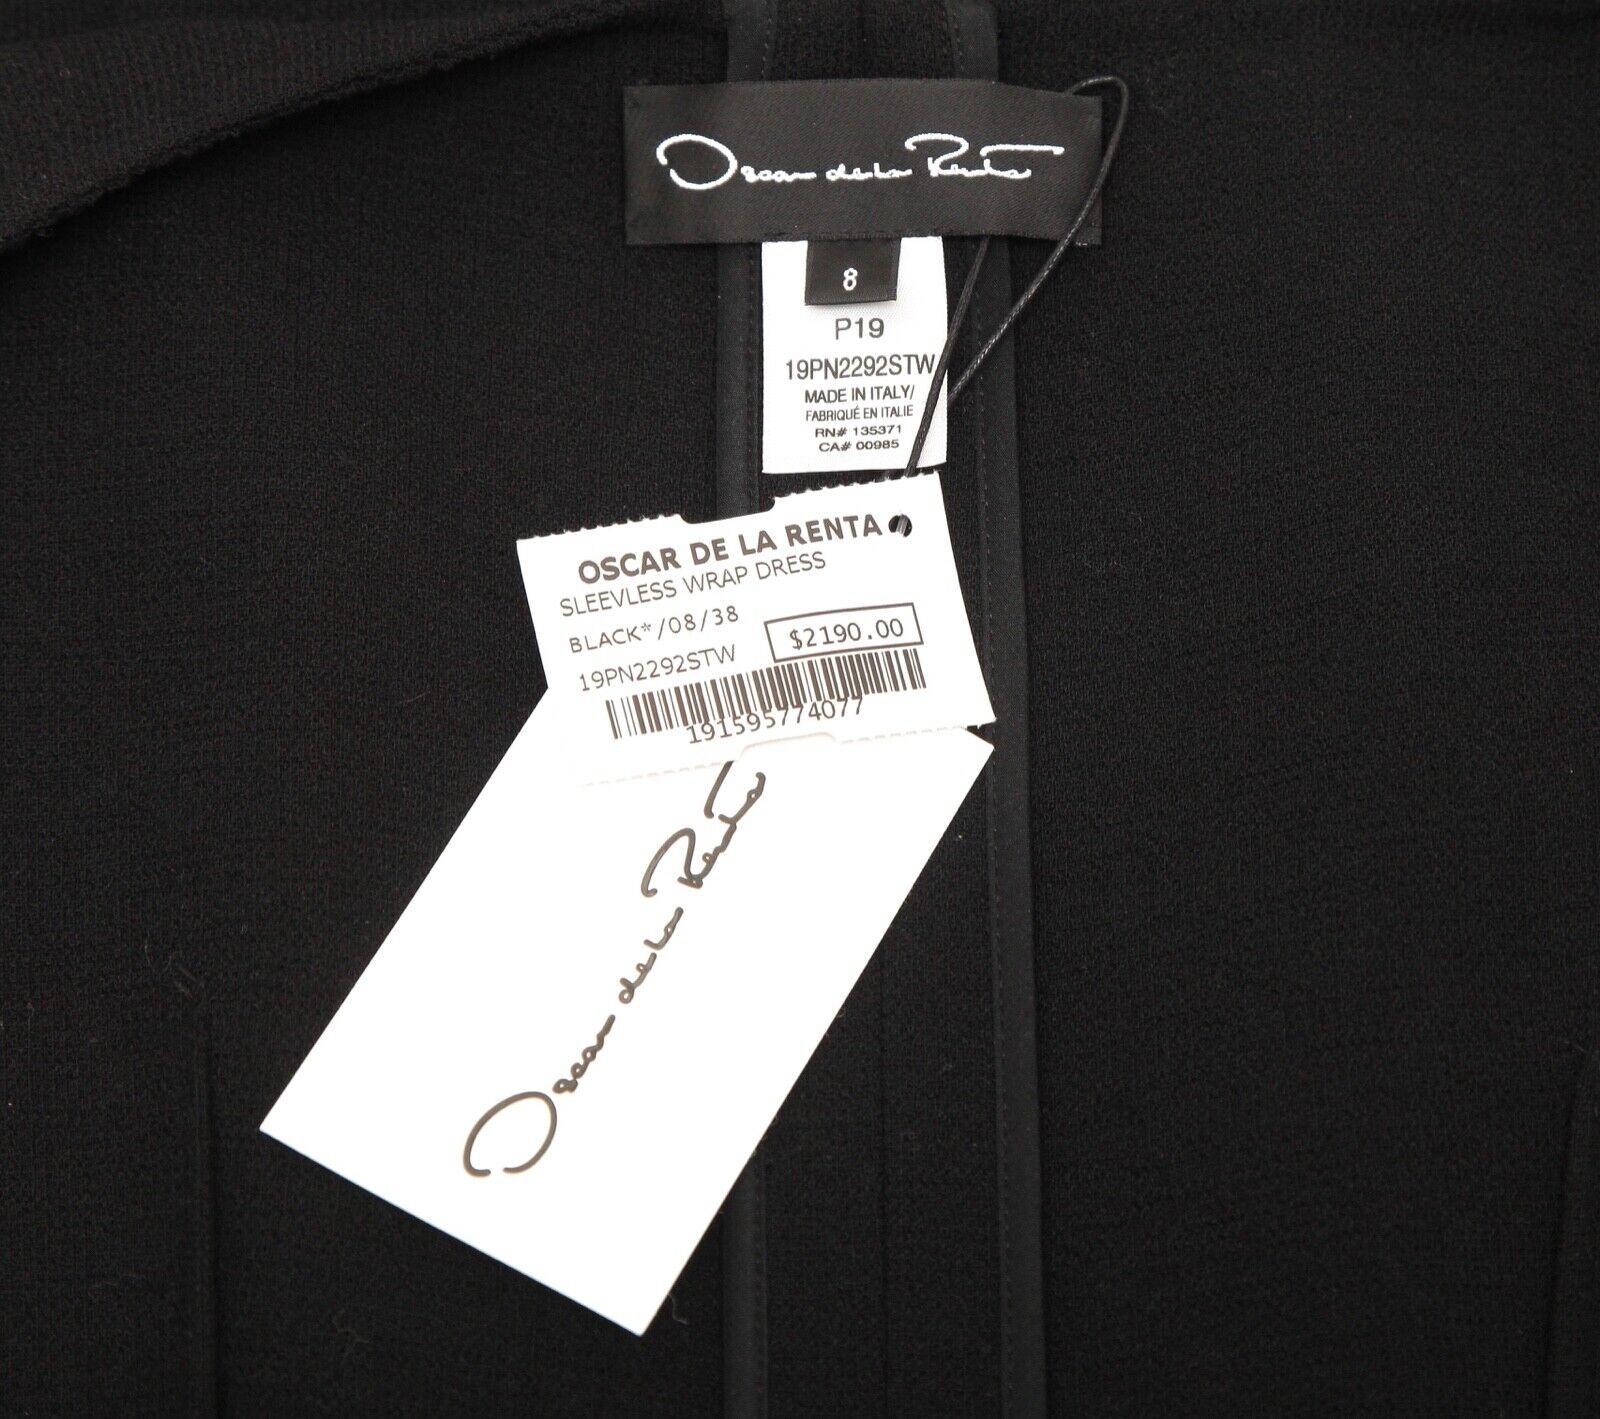 OSCAR DE LA RENTA Dress Black Sleeveless Wrap Knit Sz 8 NWT $2190 4